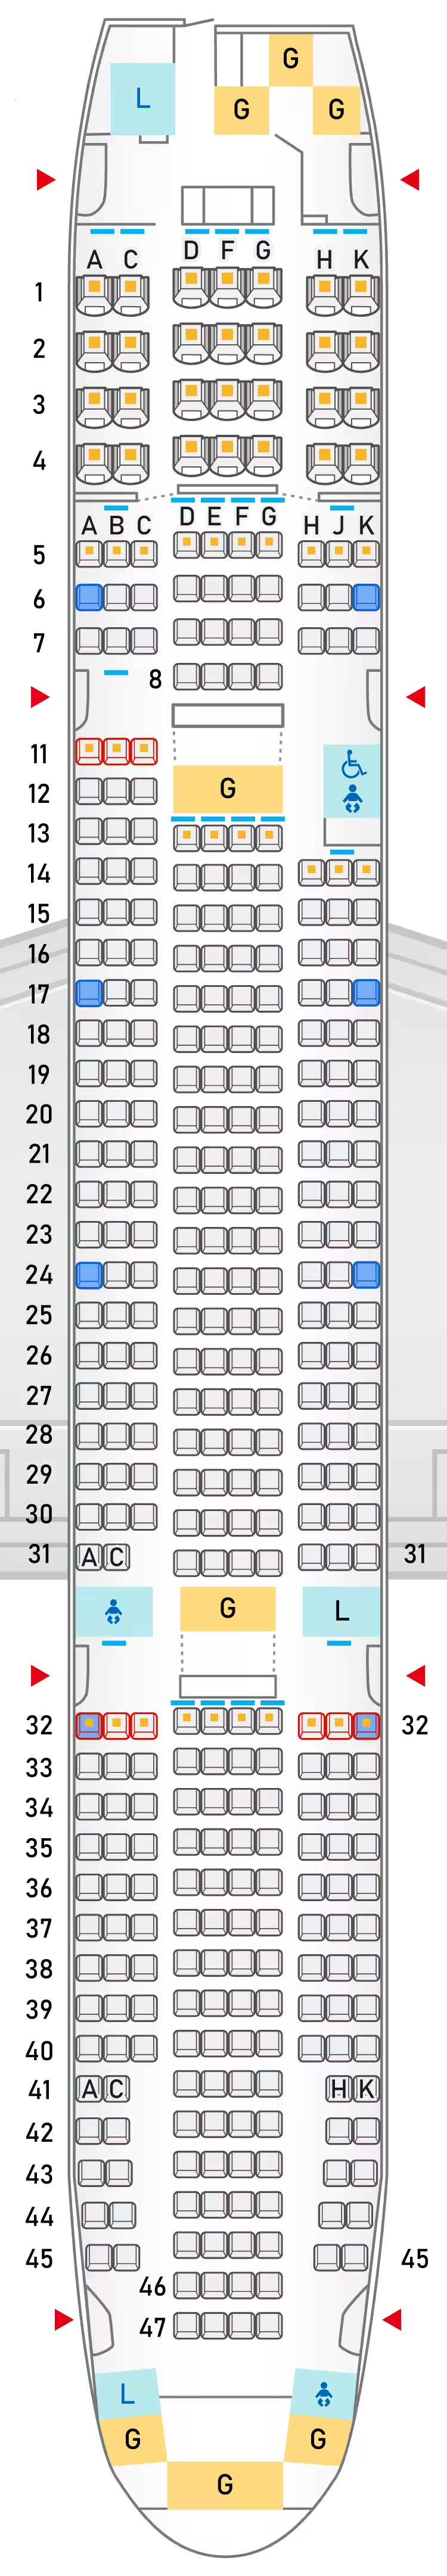 ANA（全日空）機内の座席表